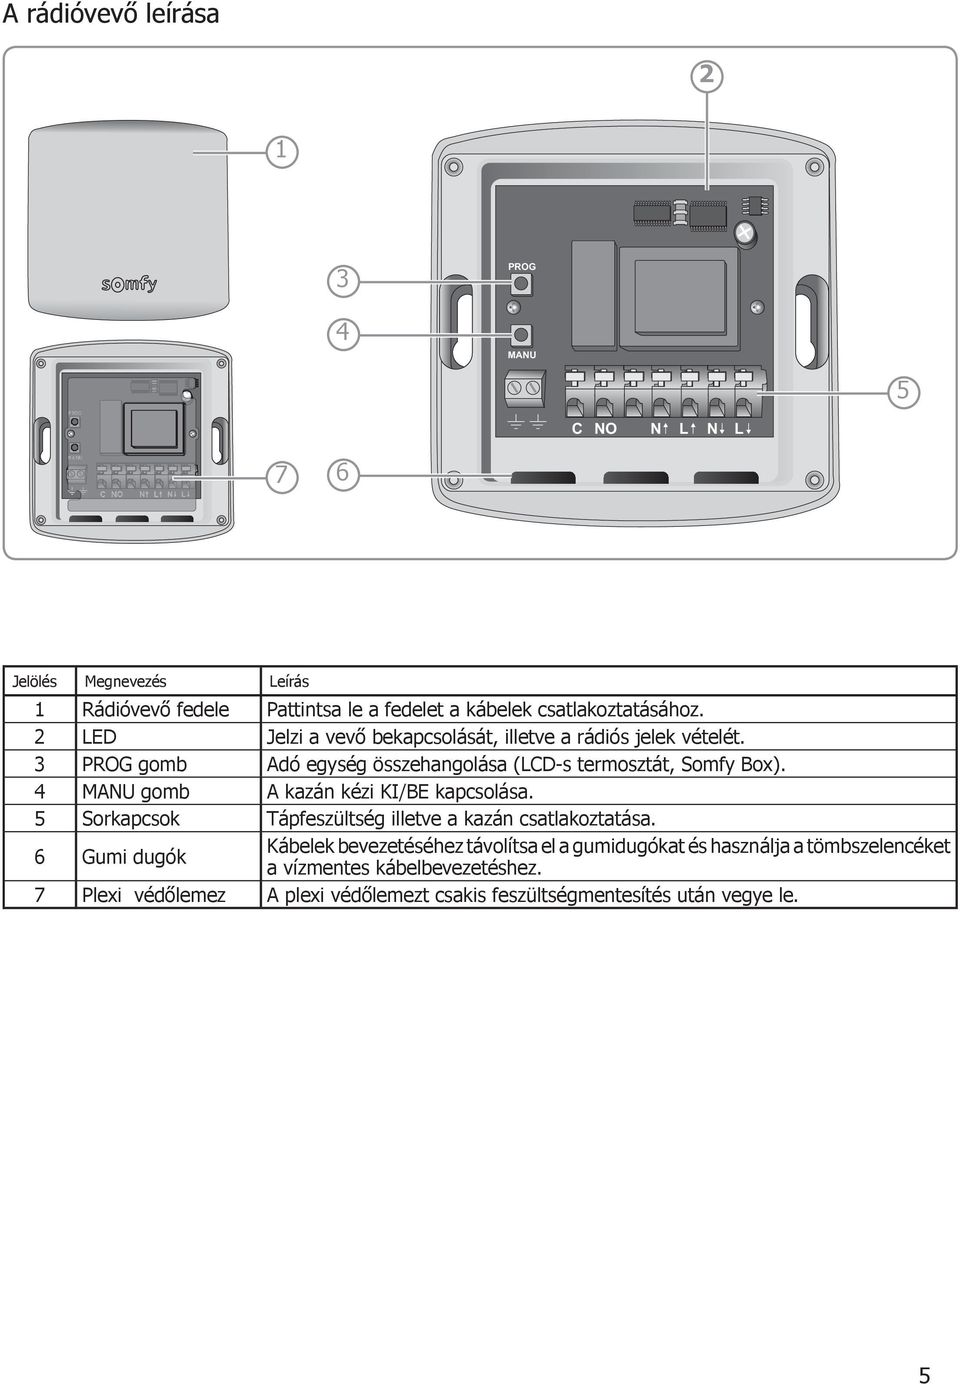 Vezeték nélküli termosztát. Beüzemelési és használati útmutató - PDF  Ingyenes letöltés